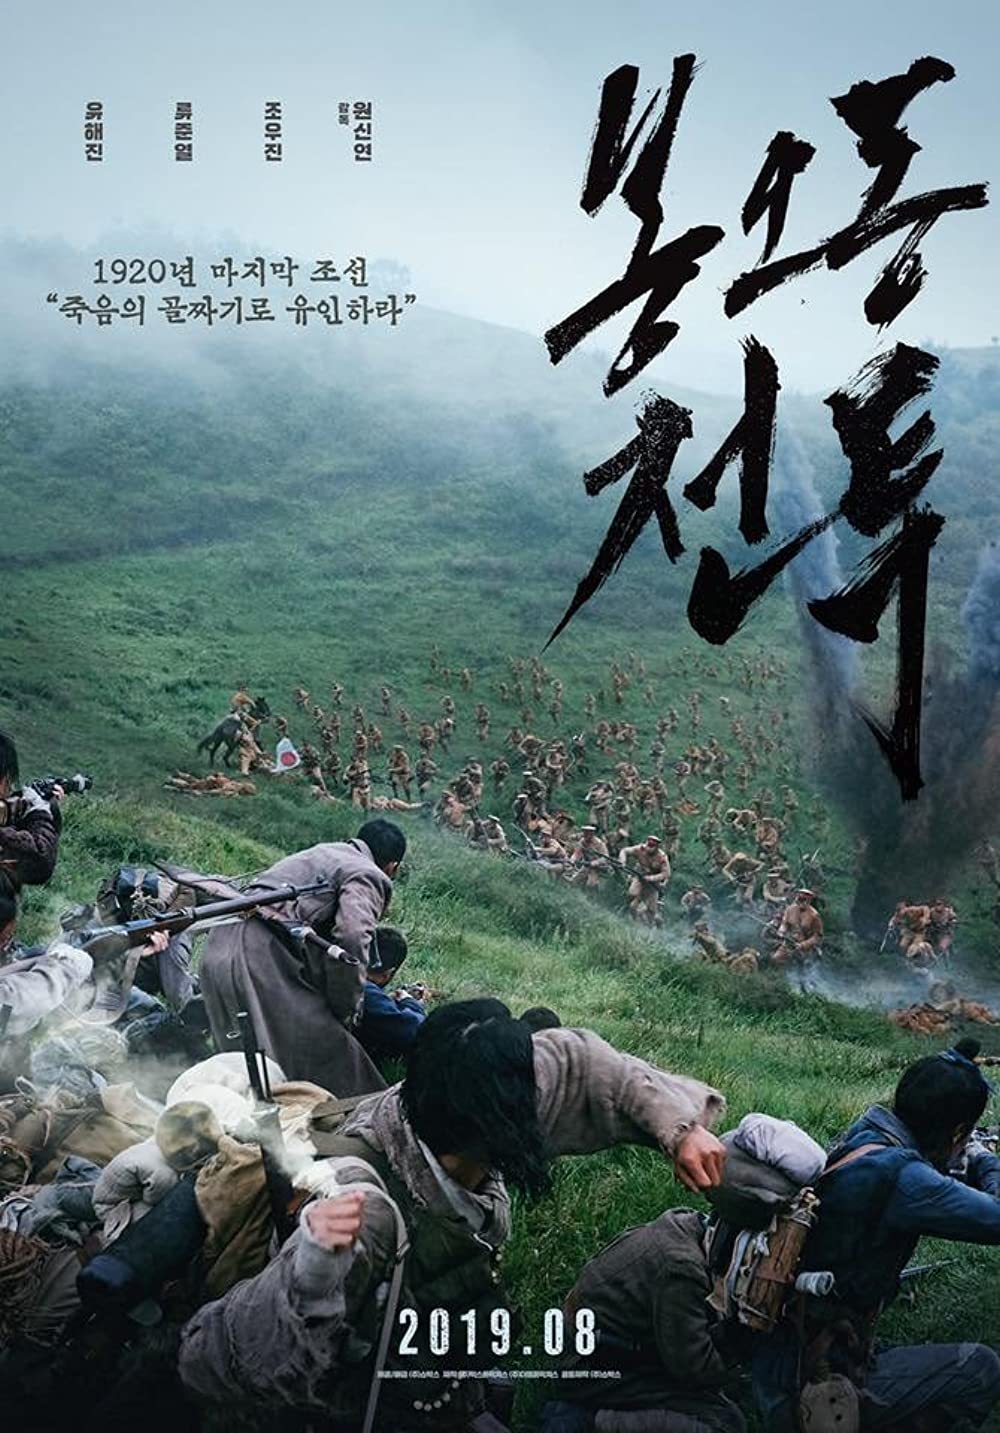 11 Film Korea tentang tentara yang penuh perang, cinta dan bela negara